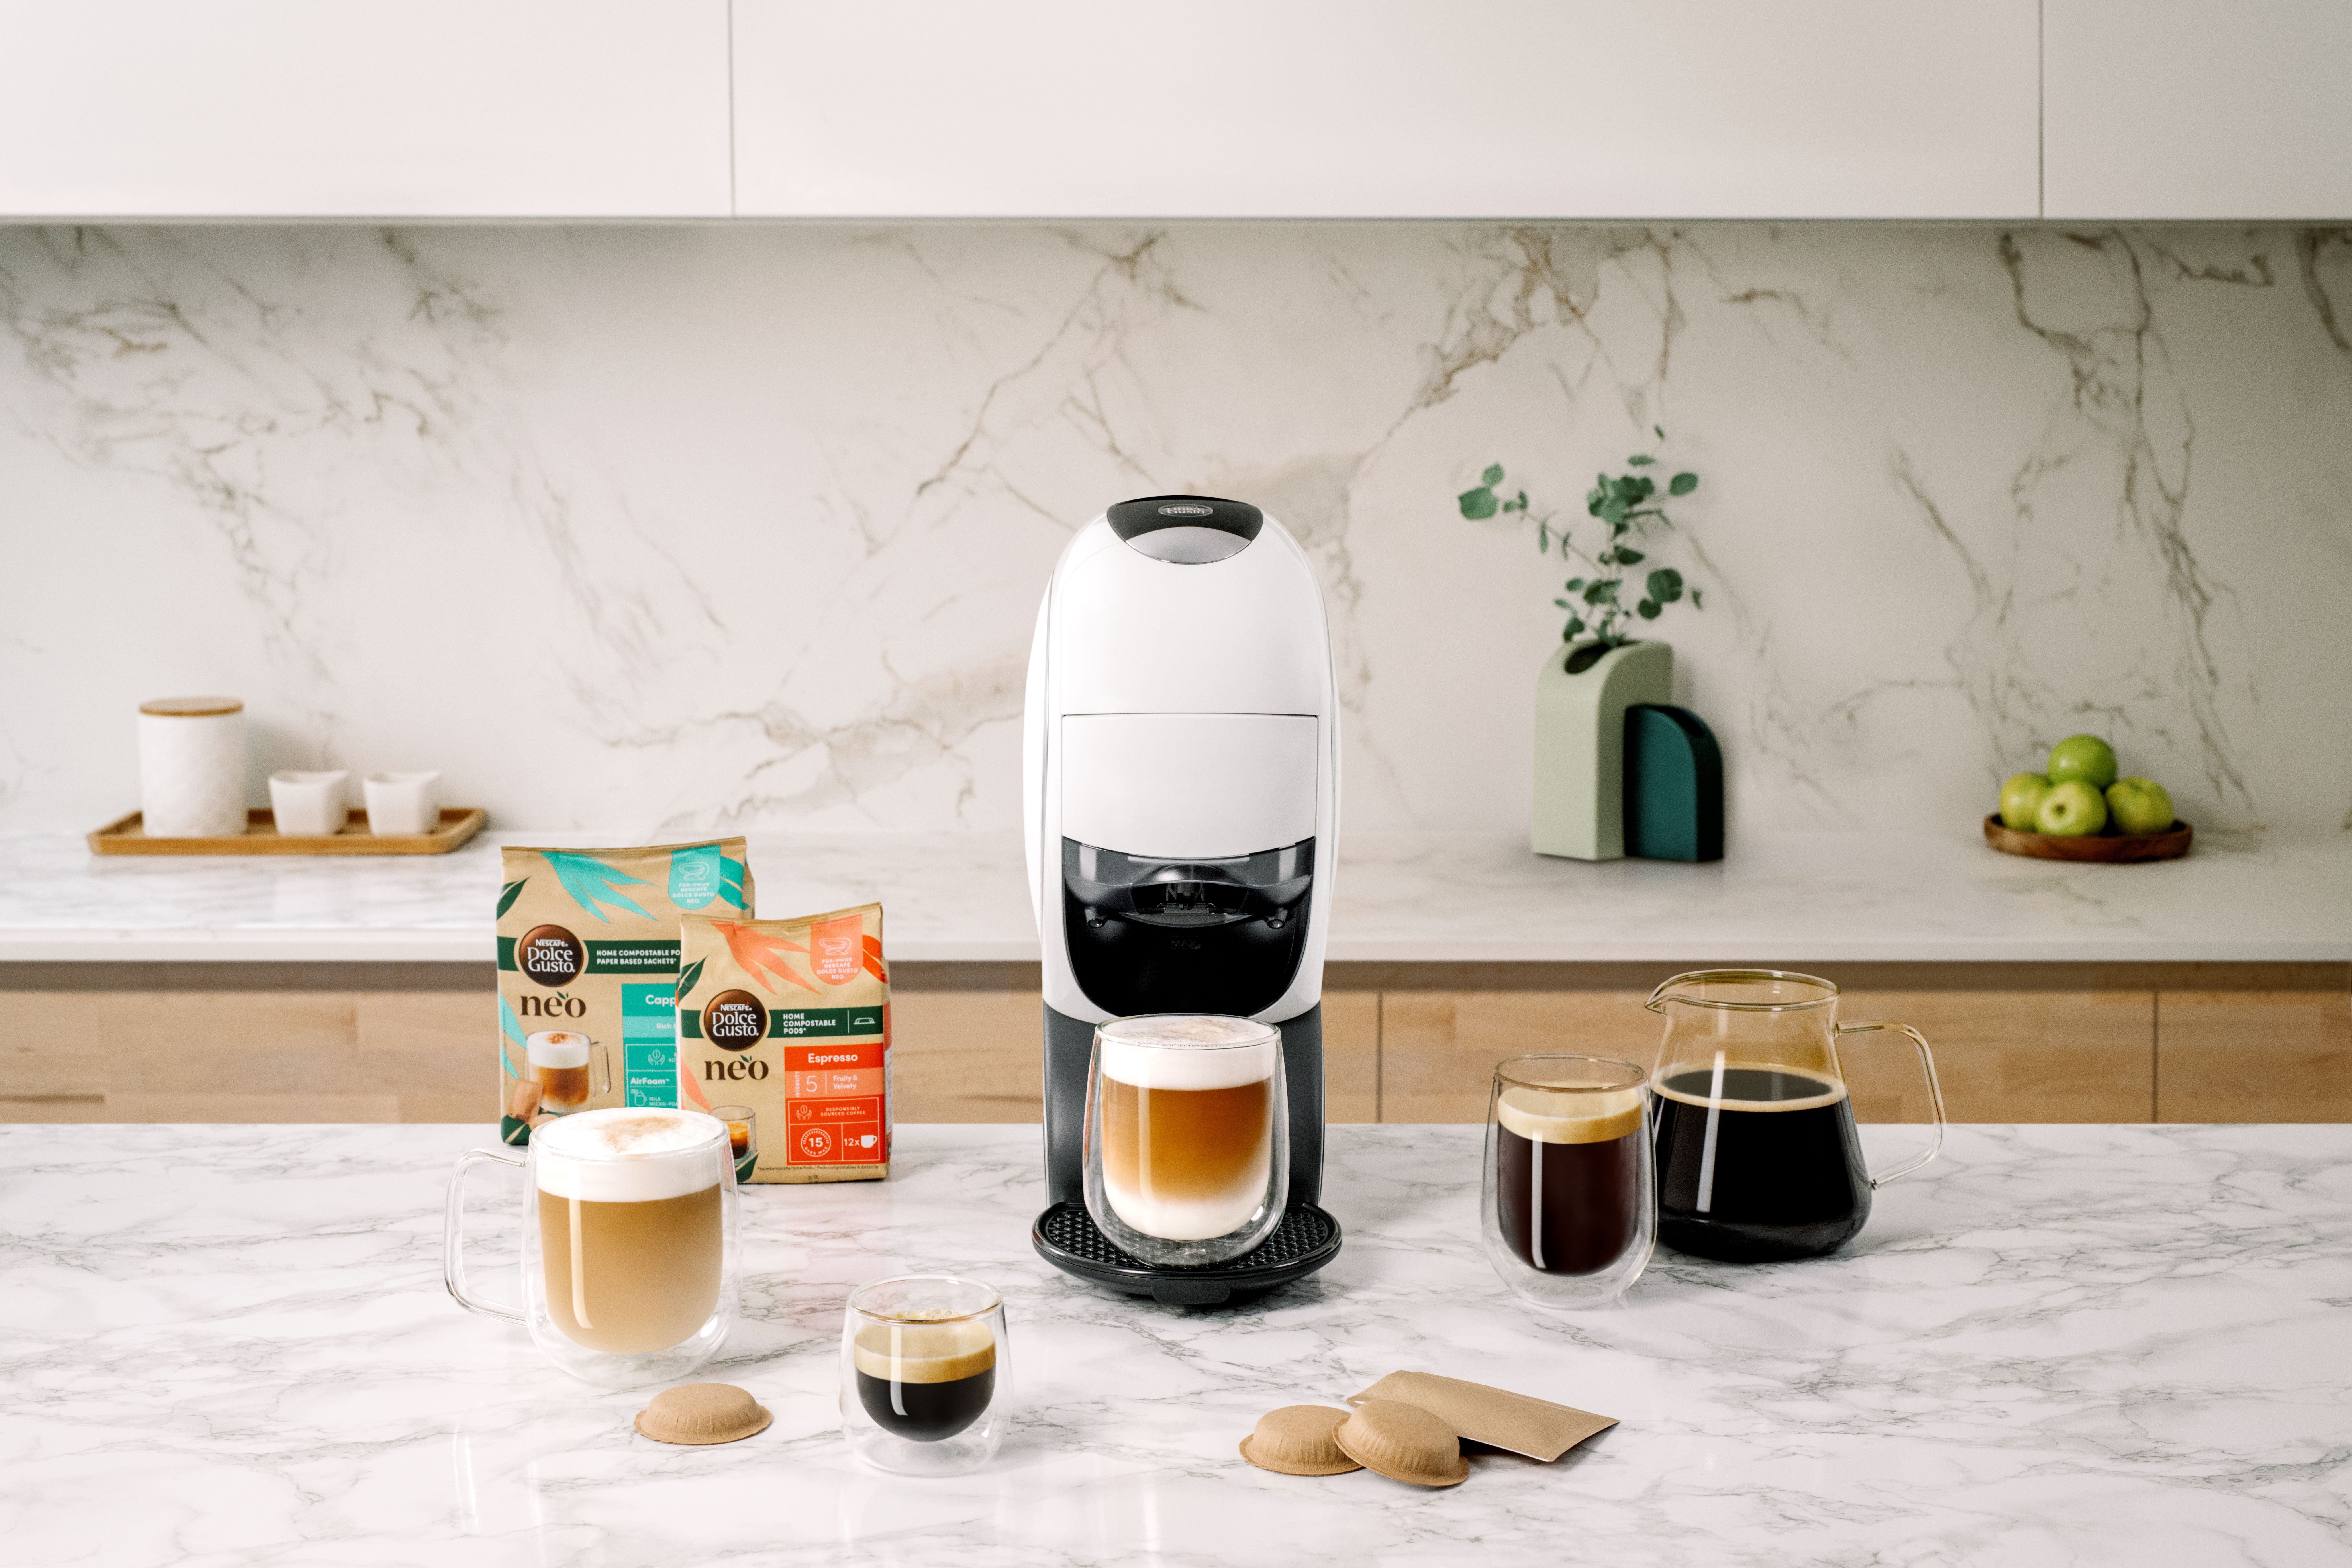 La révolution écologique de Nescafé : la Krups Dolce Gusto, la machine à  café aux dosettes compostables qui se programme directement sur smartphone  - La Libre